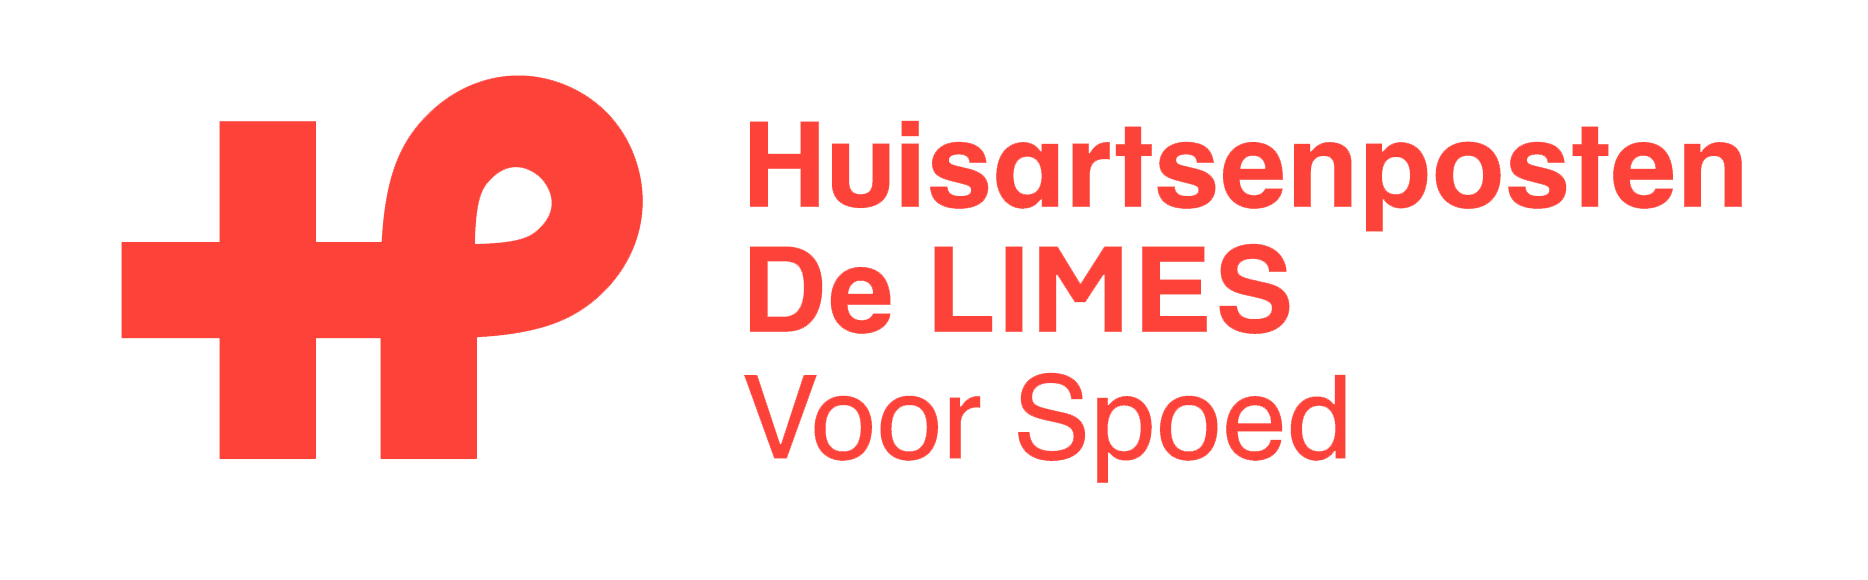 logo Huisartsenposten De LIMES